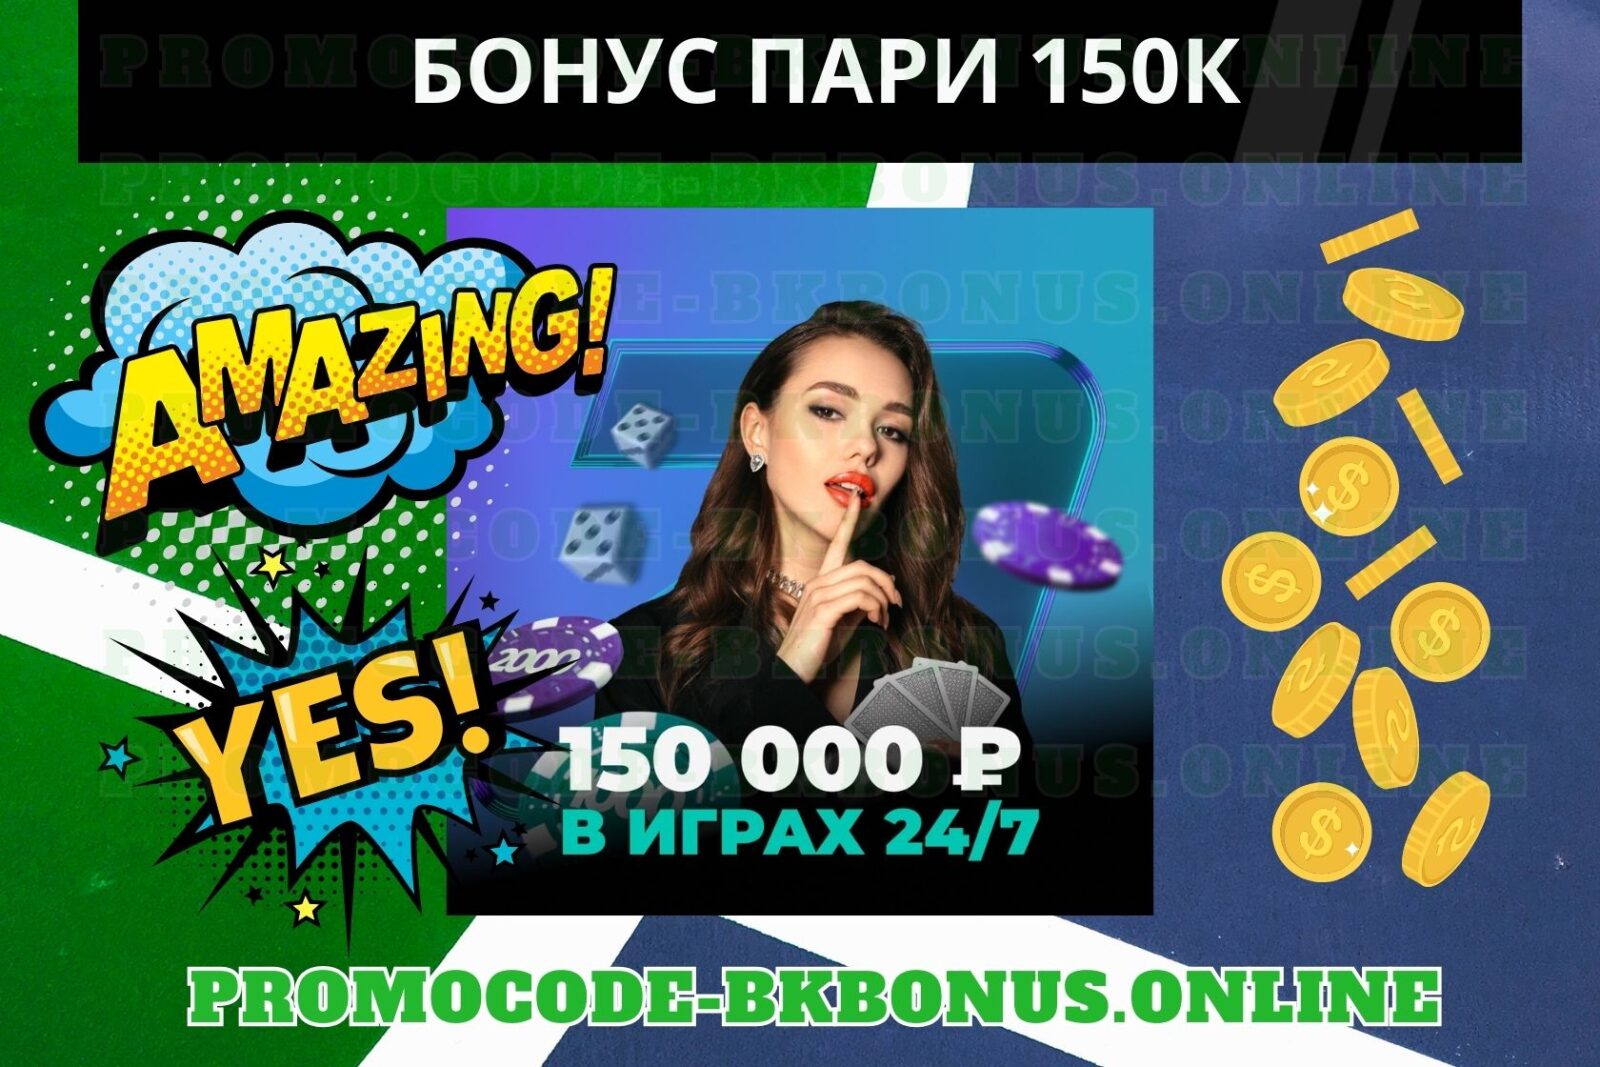 Бонус ПАРИ -фрибет 150.000 рублей в играх 24/7